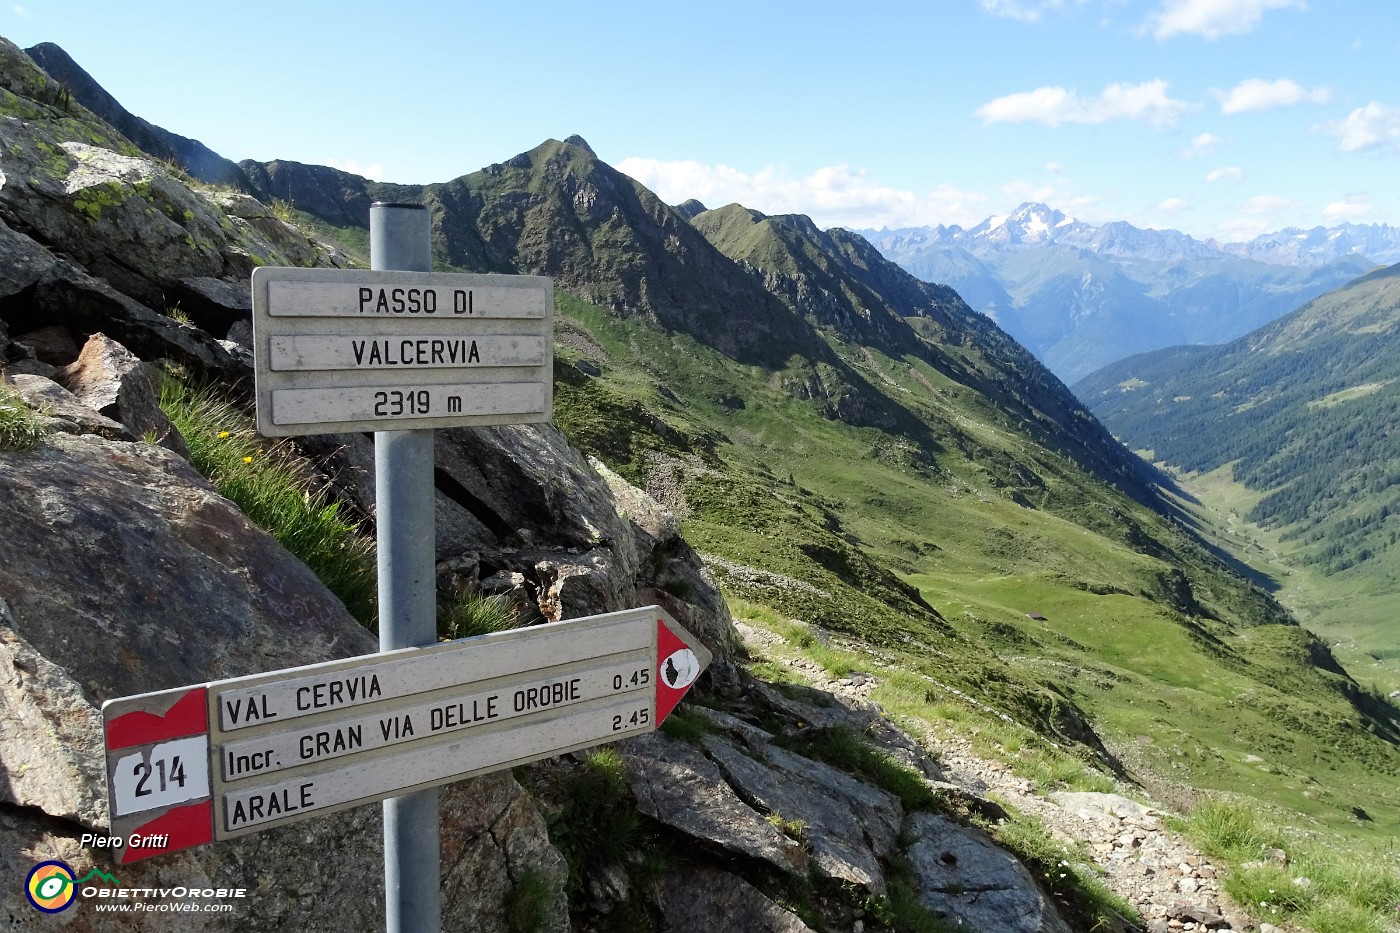 82 Al Passo di Val Cervia (2319 m).JPG